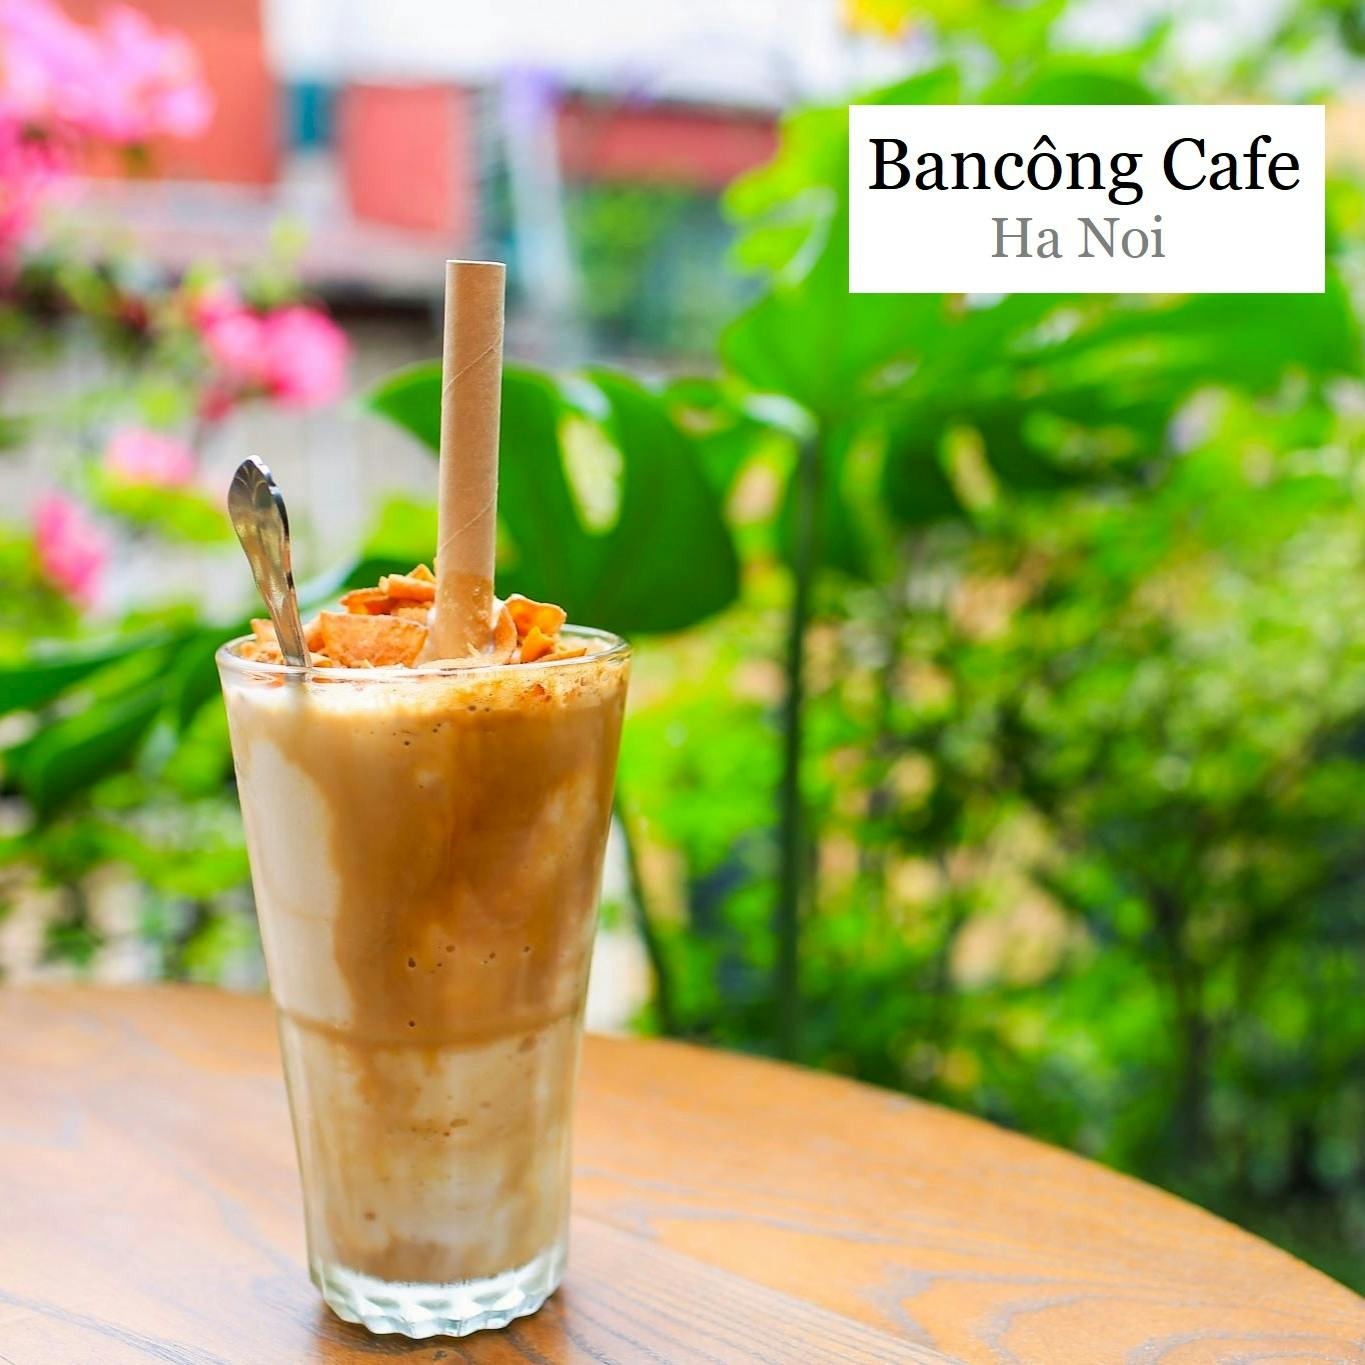 Bancong Cafe, Hanoi